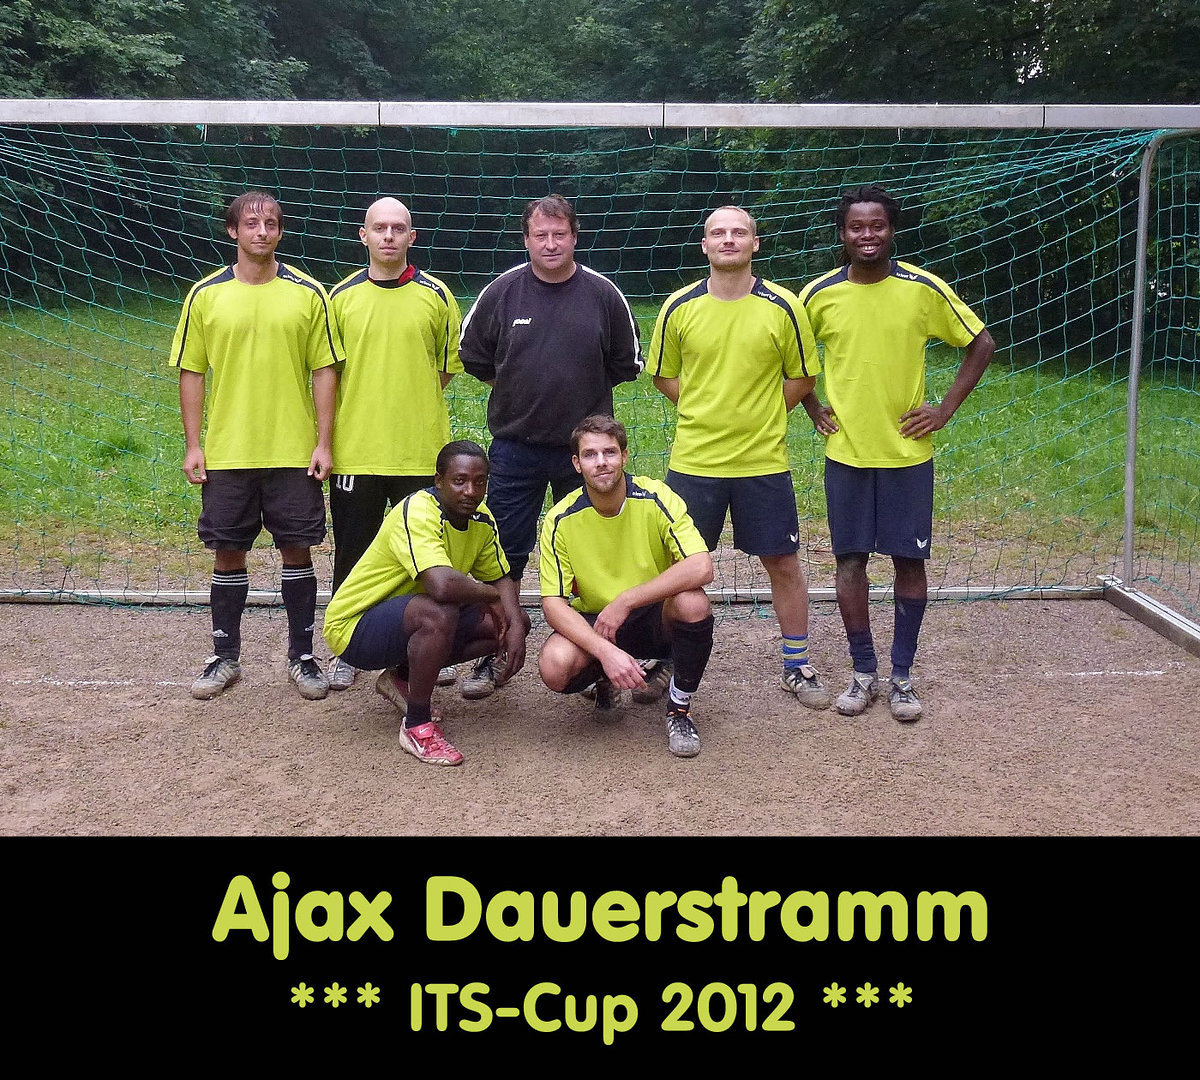 Its cup 2012   teamfotos   ajax dauerstramm retina